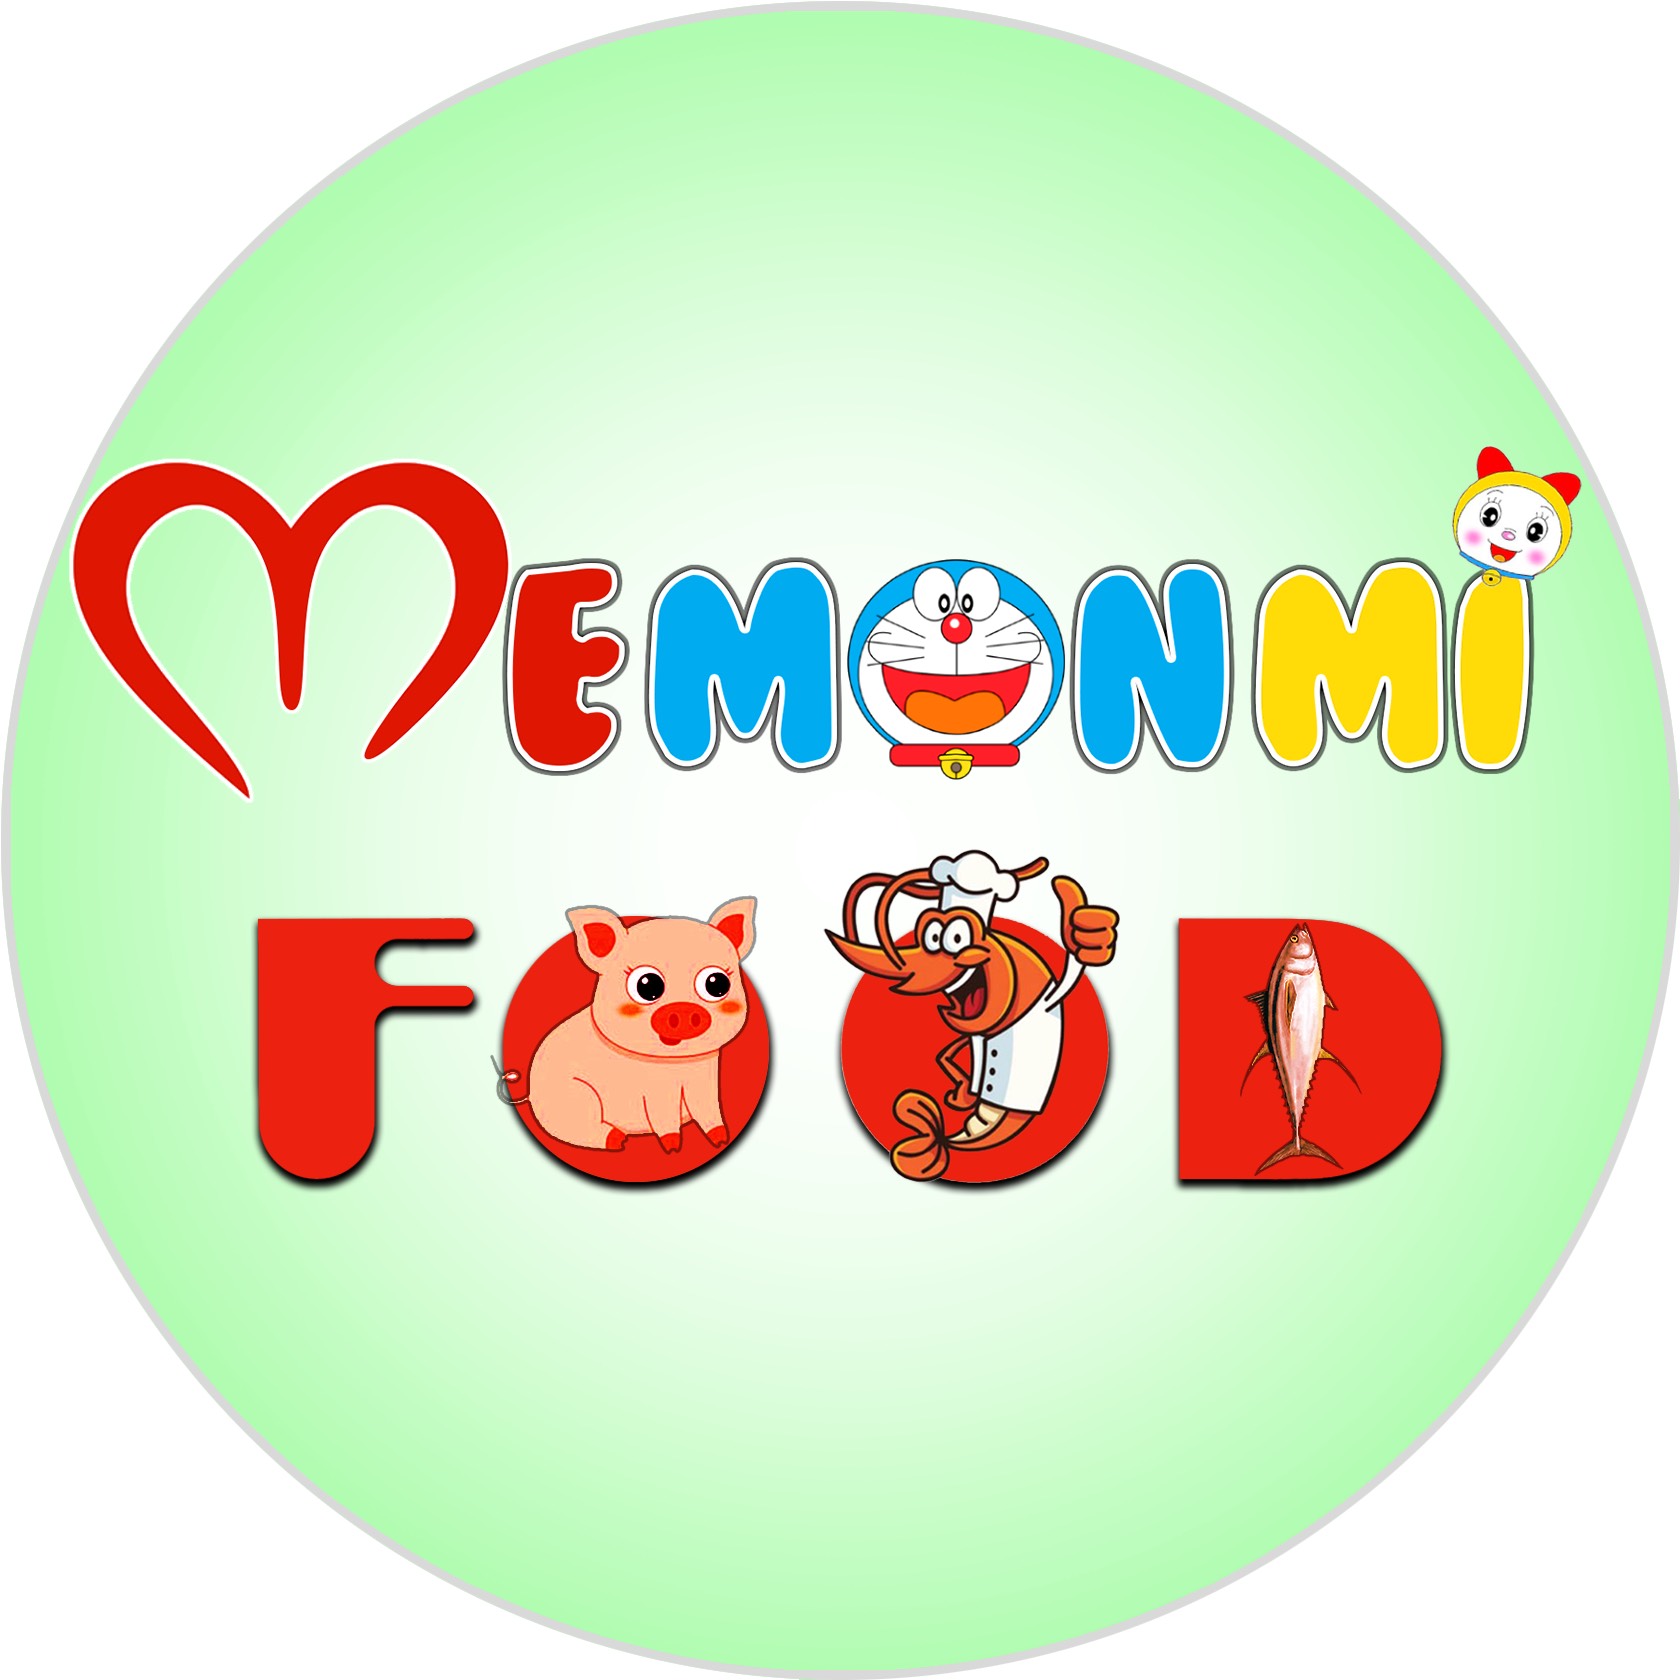 MeMonMi Food